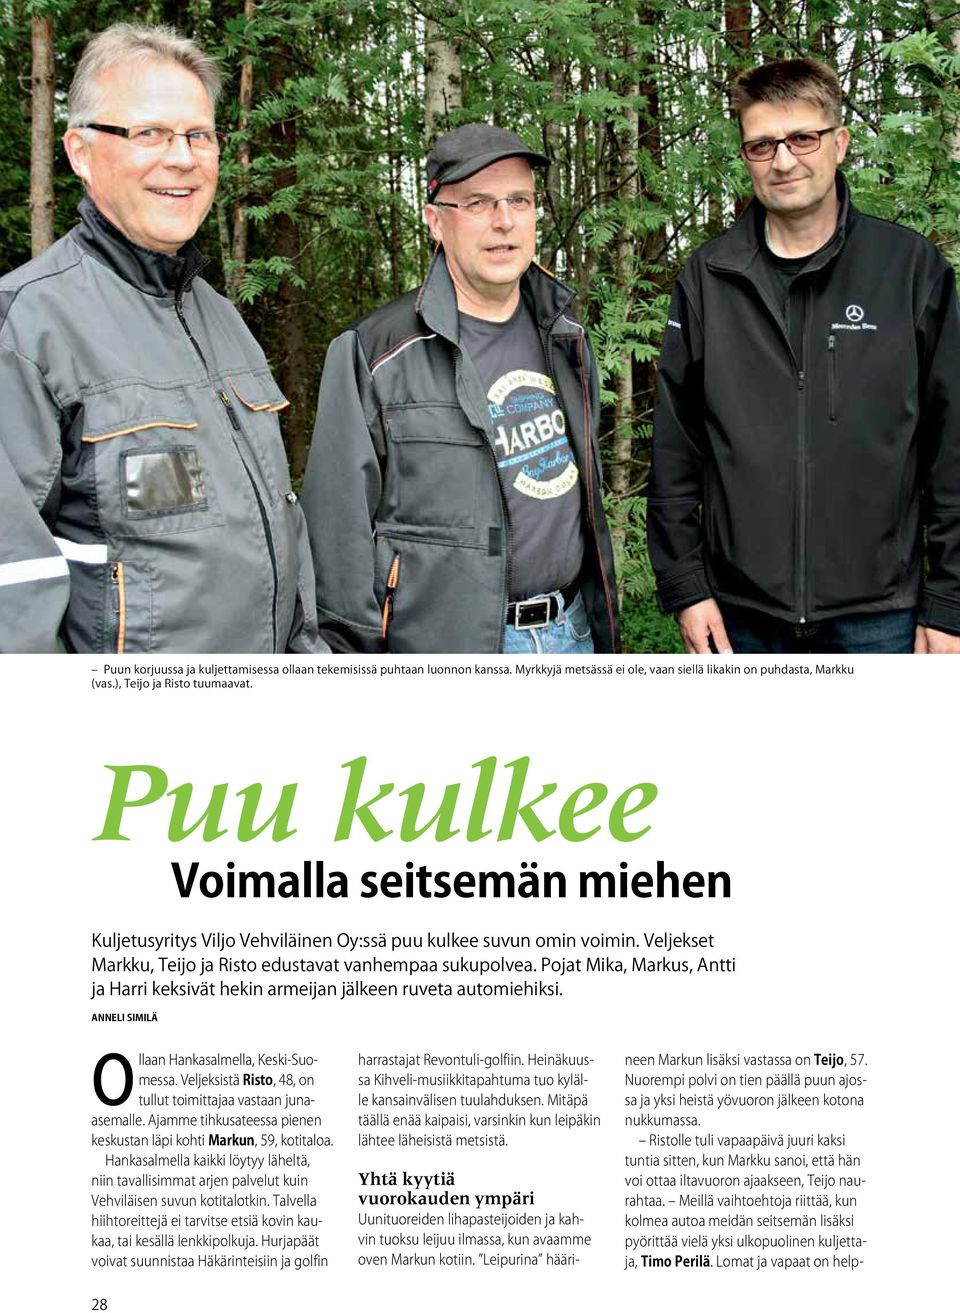 Pojat Mika, Markus, Antti ja Harri keksivät hekin armeijan jälkeen ruveta automiehiksi. Anneli Similä Ollaan Hankasalmella, Keski-Suomessa.